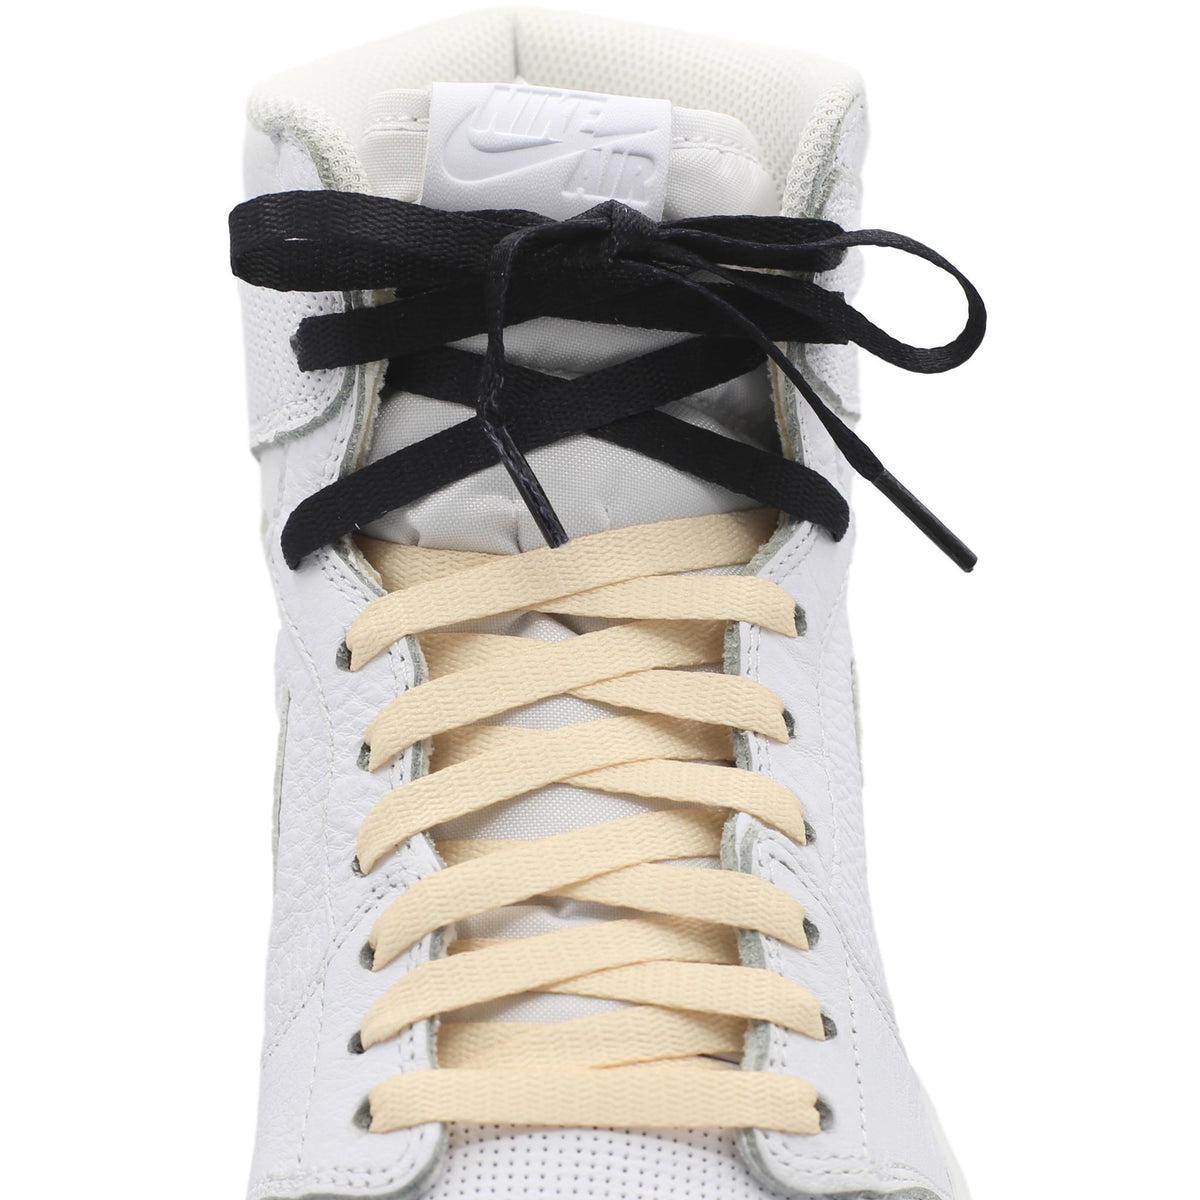 Union Jordan 1 Shoe Laces